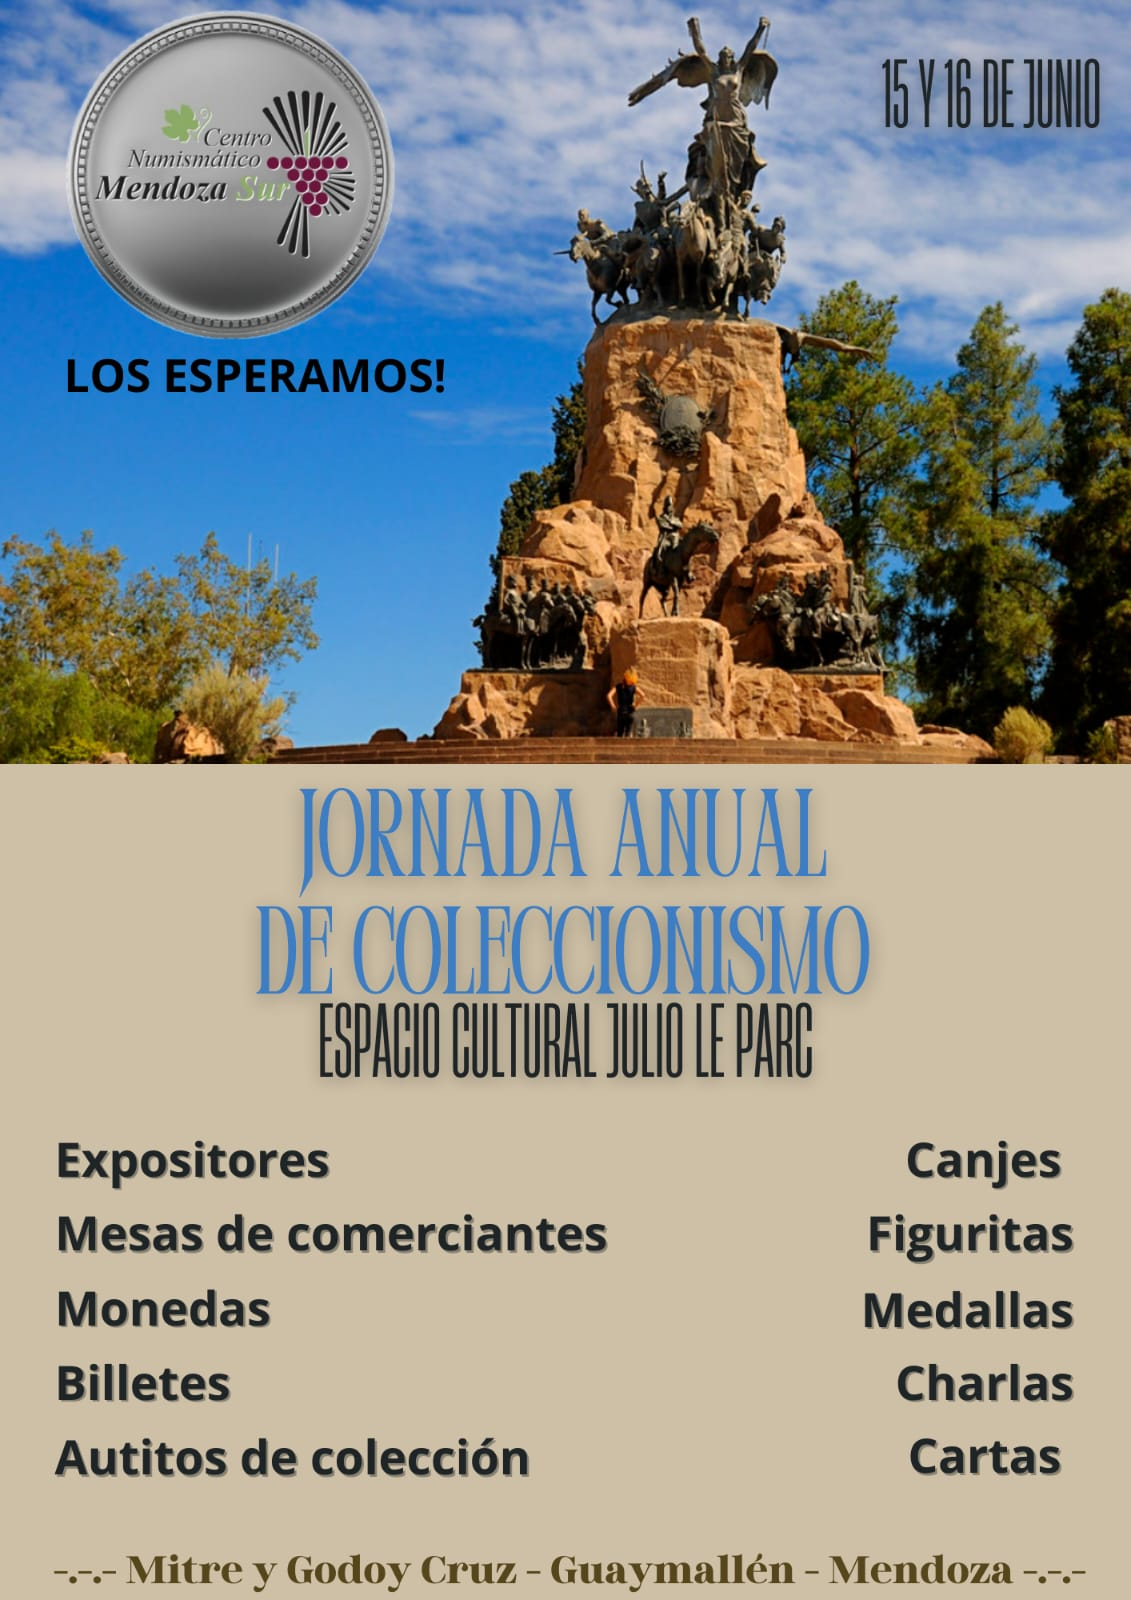 Jornada Anual de Coleccionismo - Centro Numismático Mendoza Sur